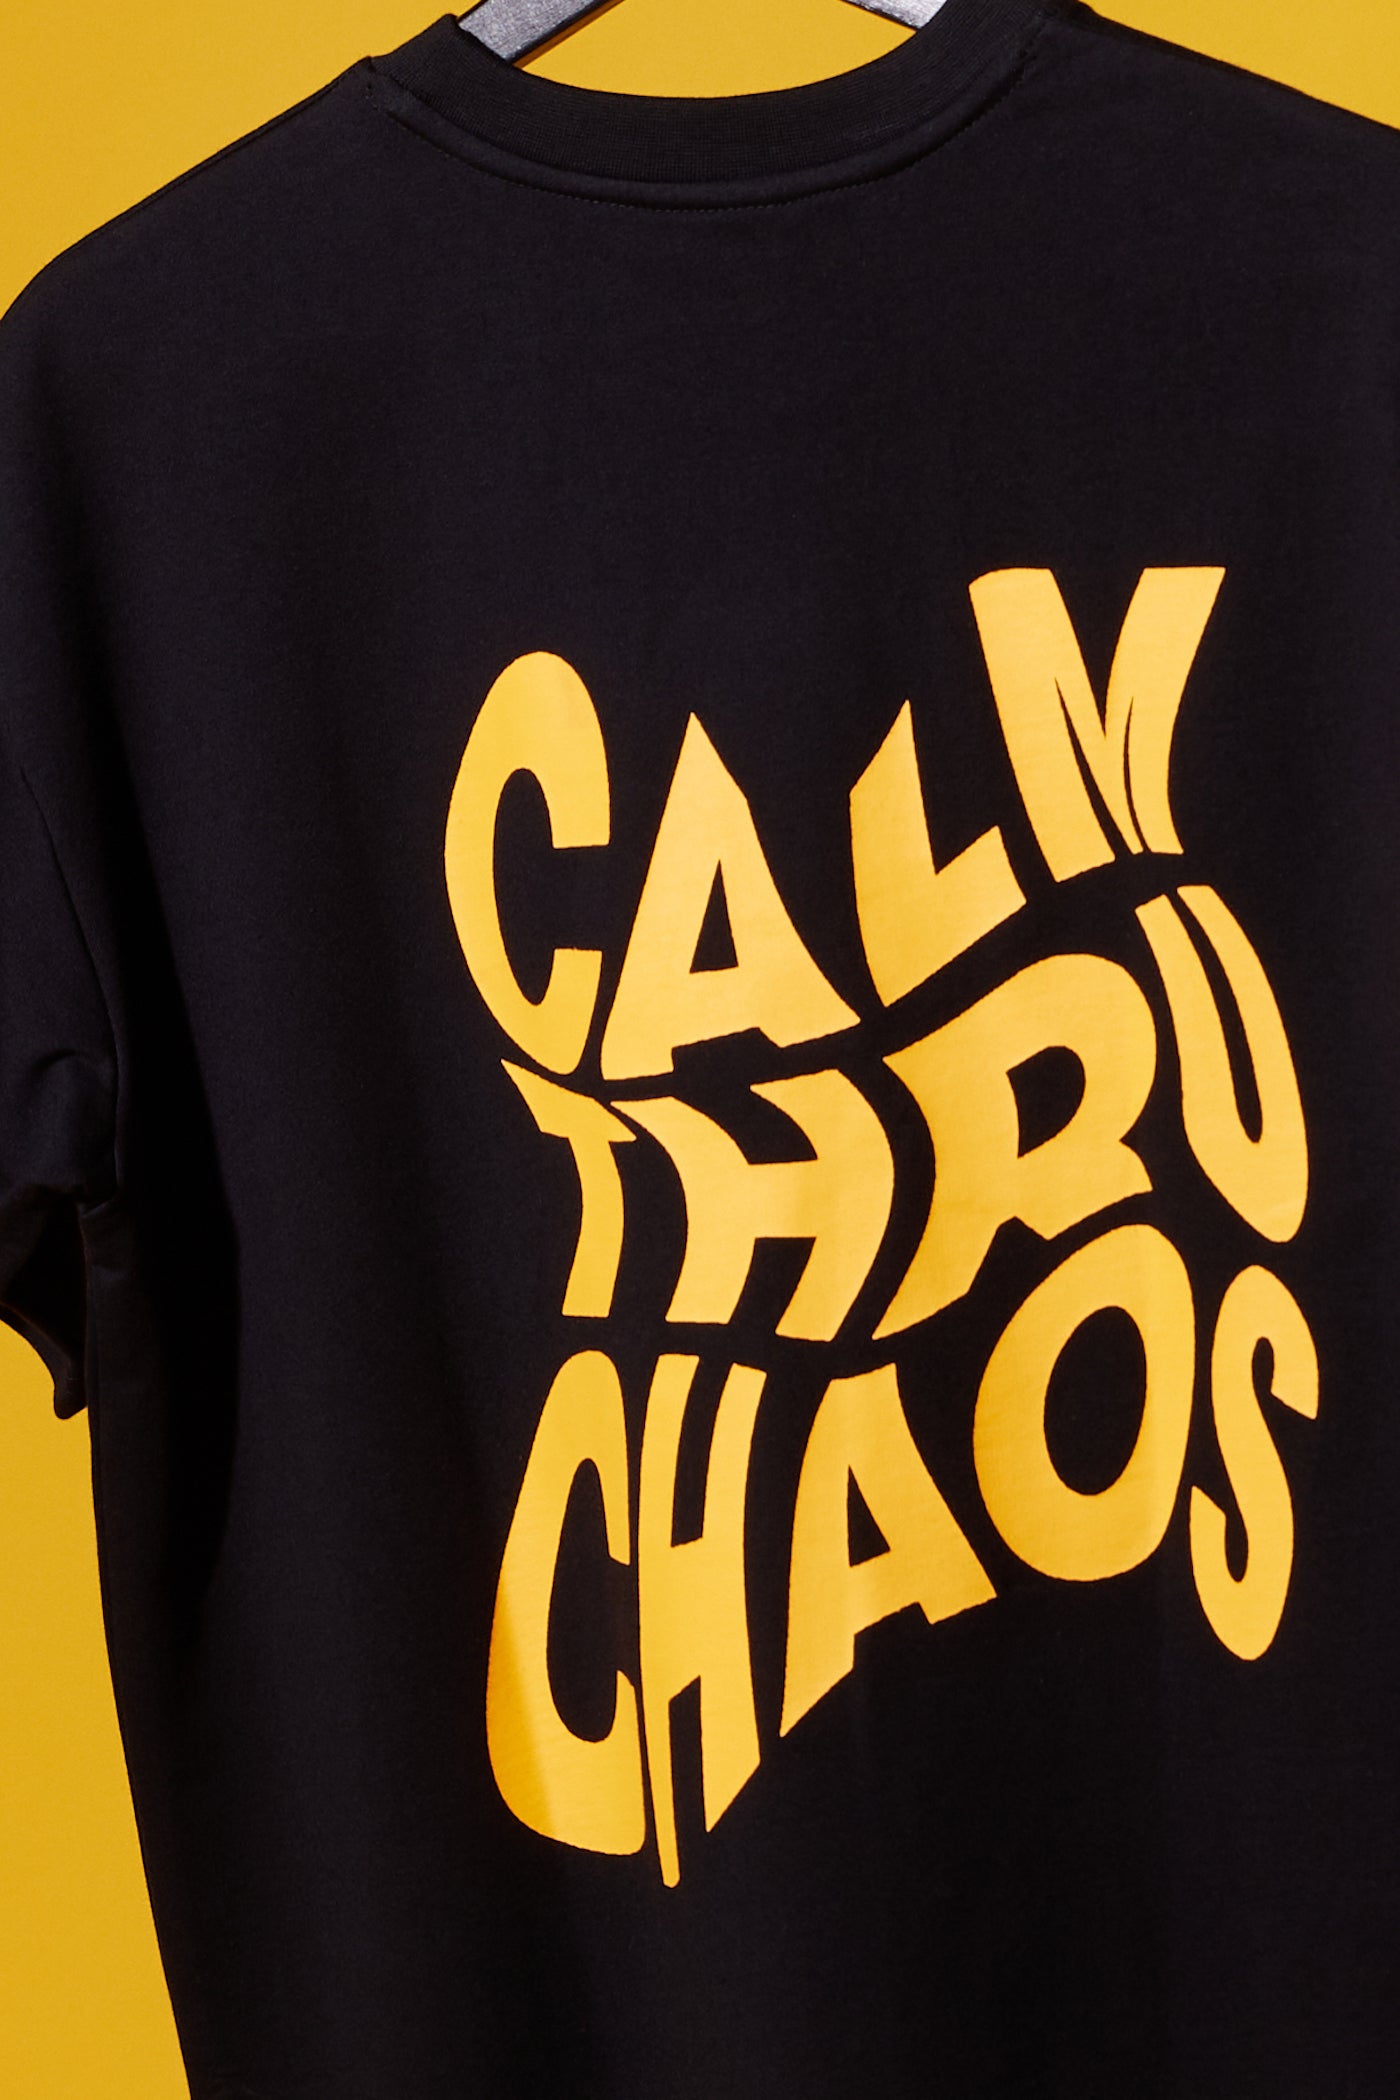 Calm Thru Chaos Tee